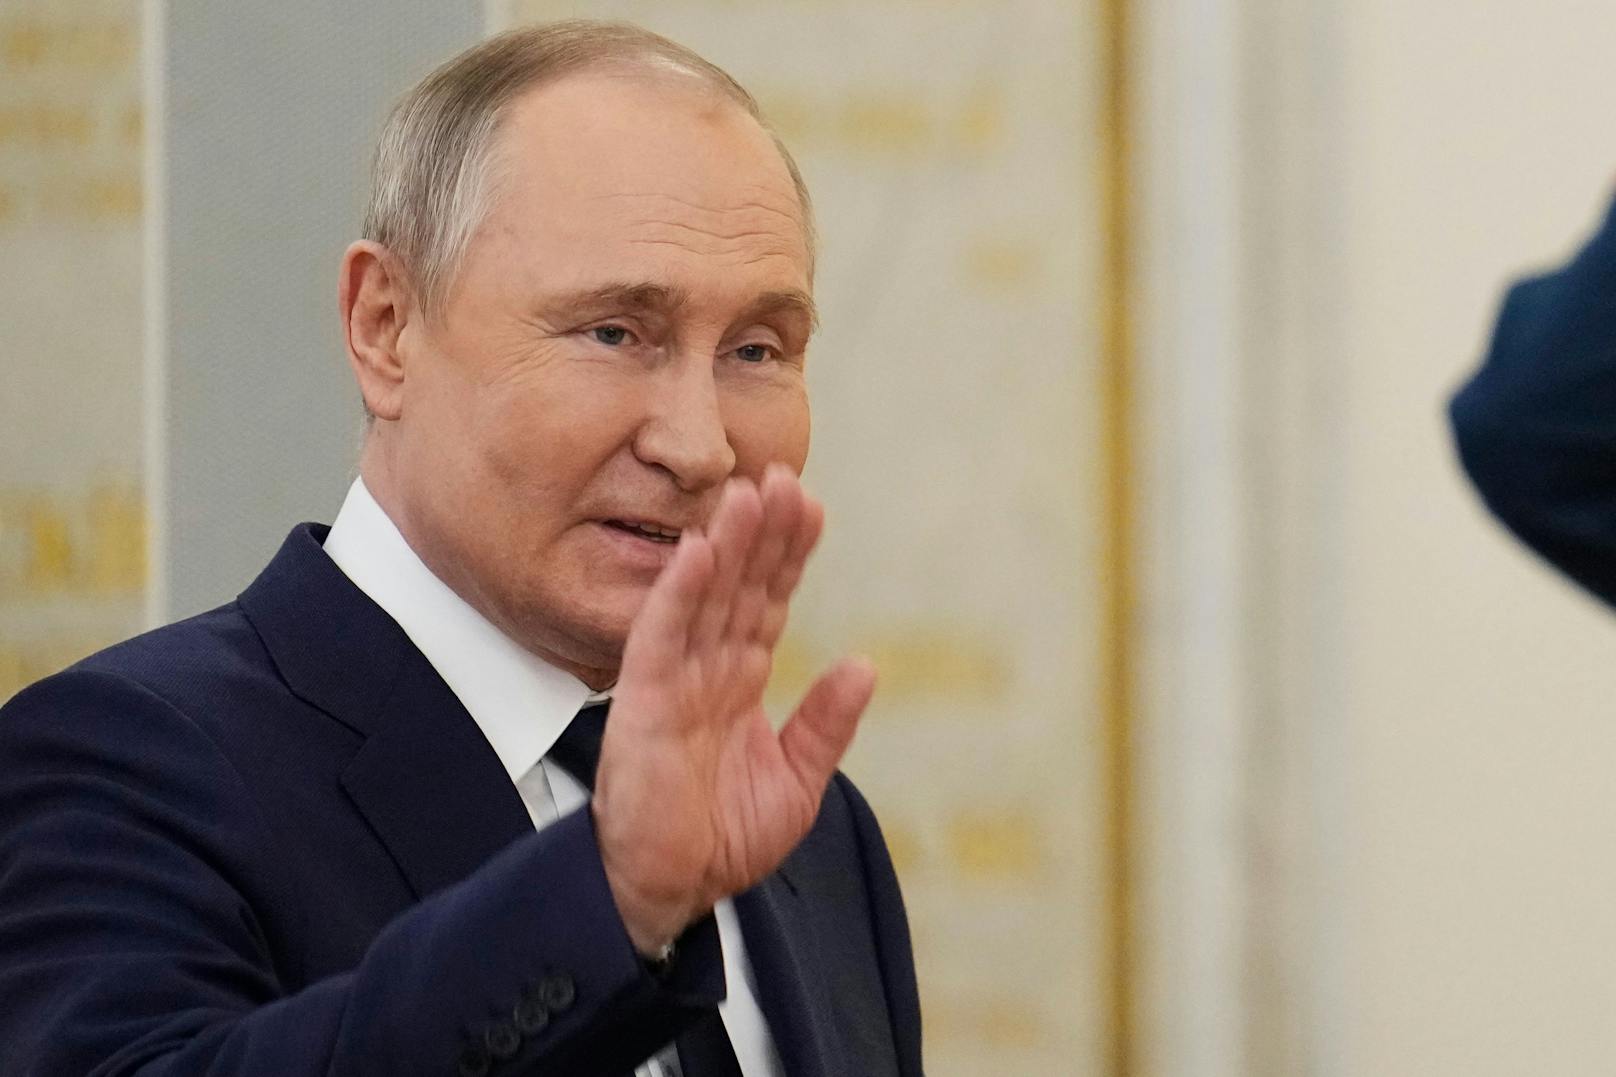 Kreml-Chef Wladimir Putin hat dem Westen erneut indirekt mit dem Einsatz von Atomraketen gedroht.